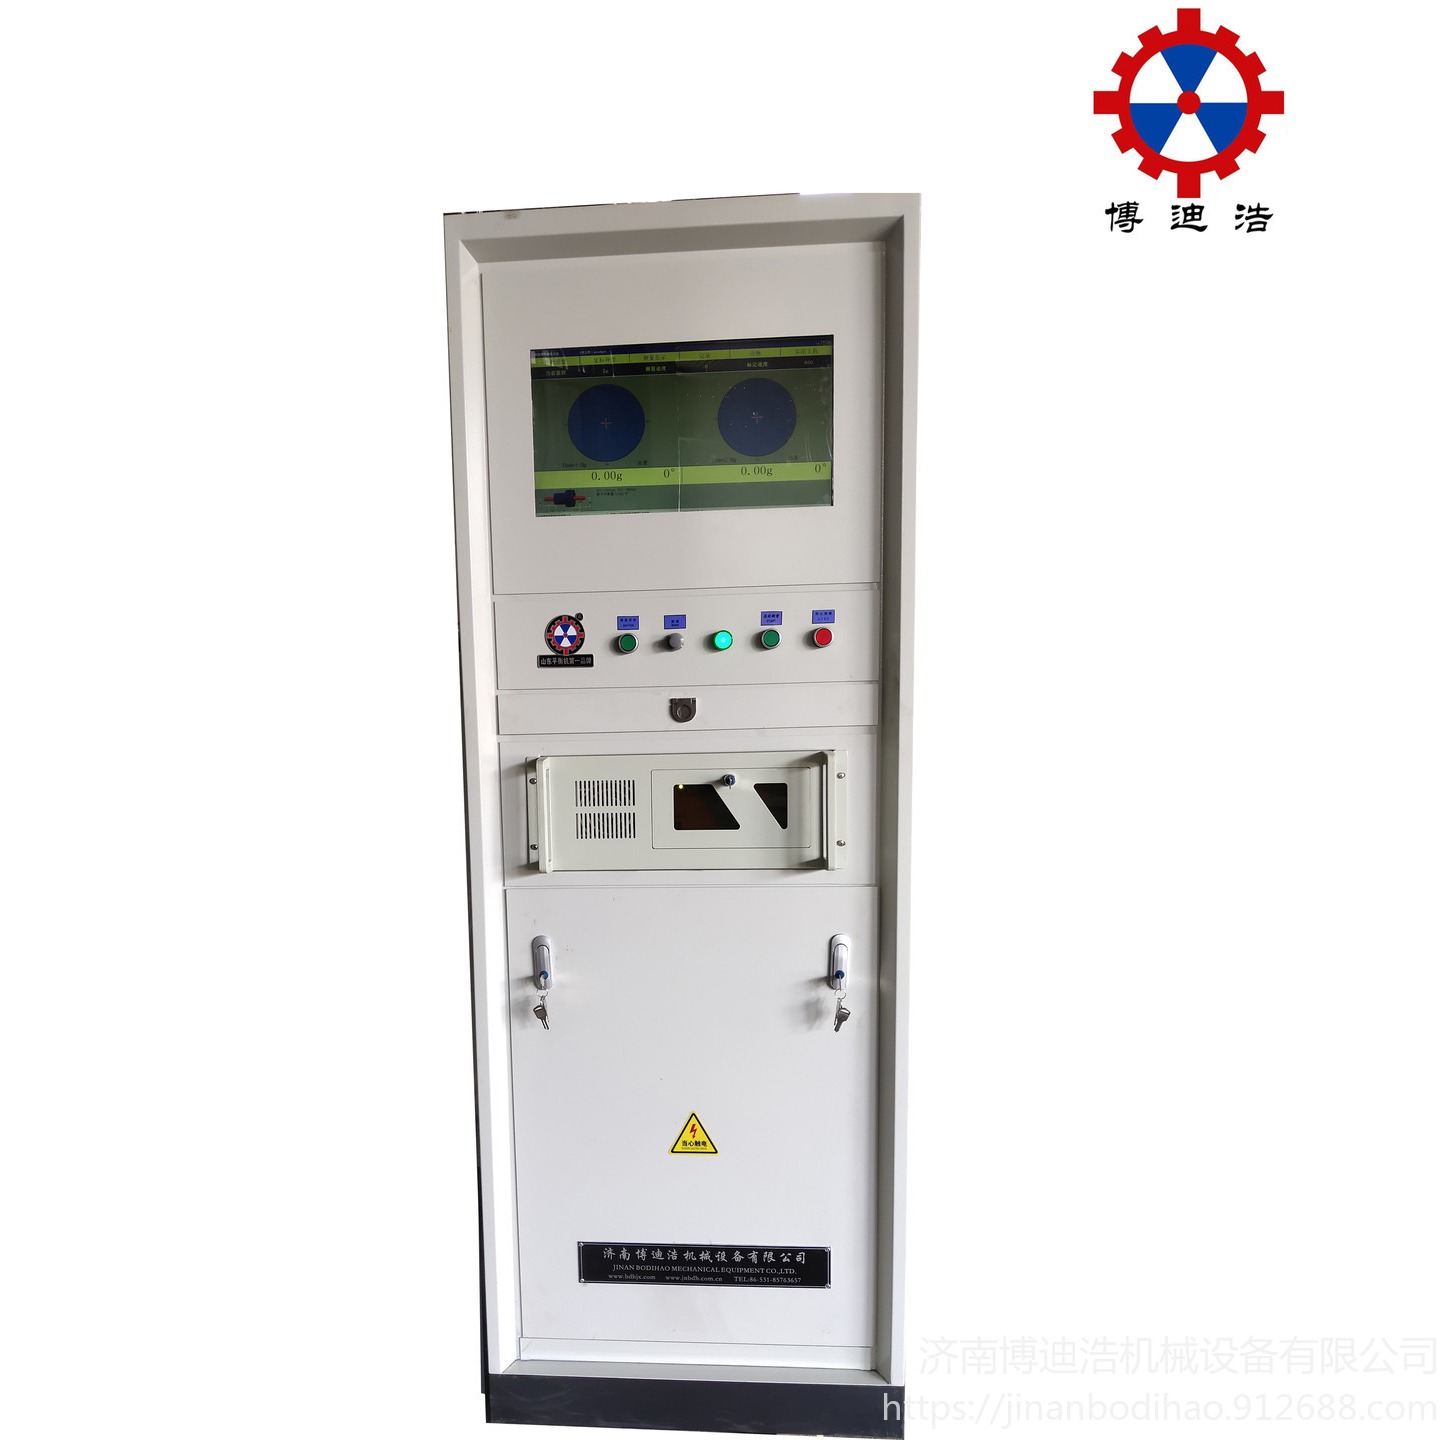 广州二手平衡机更换测量系统平衡机测量系统改造升级 博迪浩供应全自动平衡机测量系统GB-2000图片